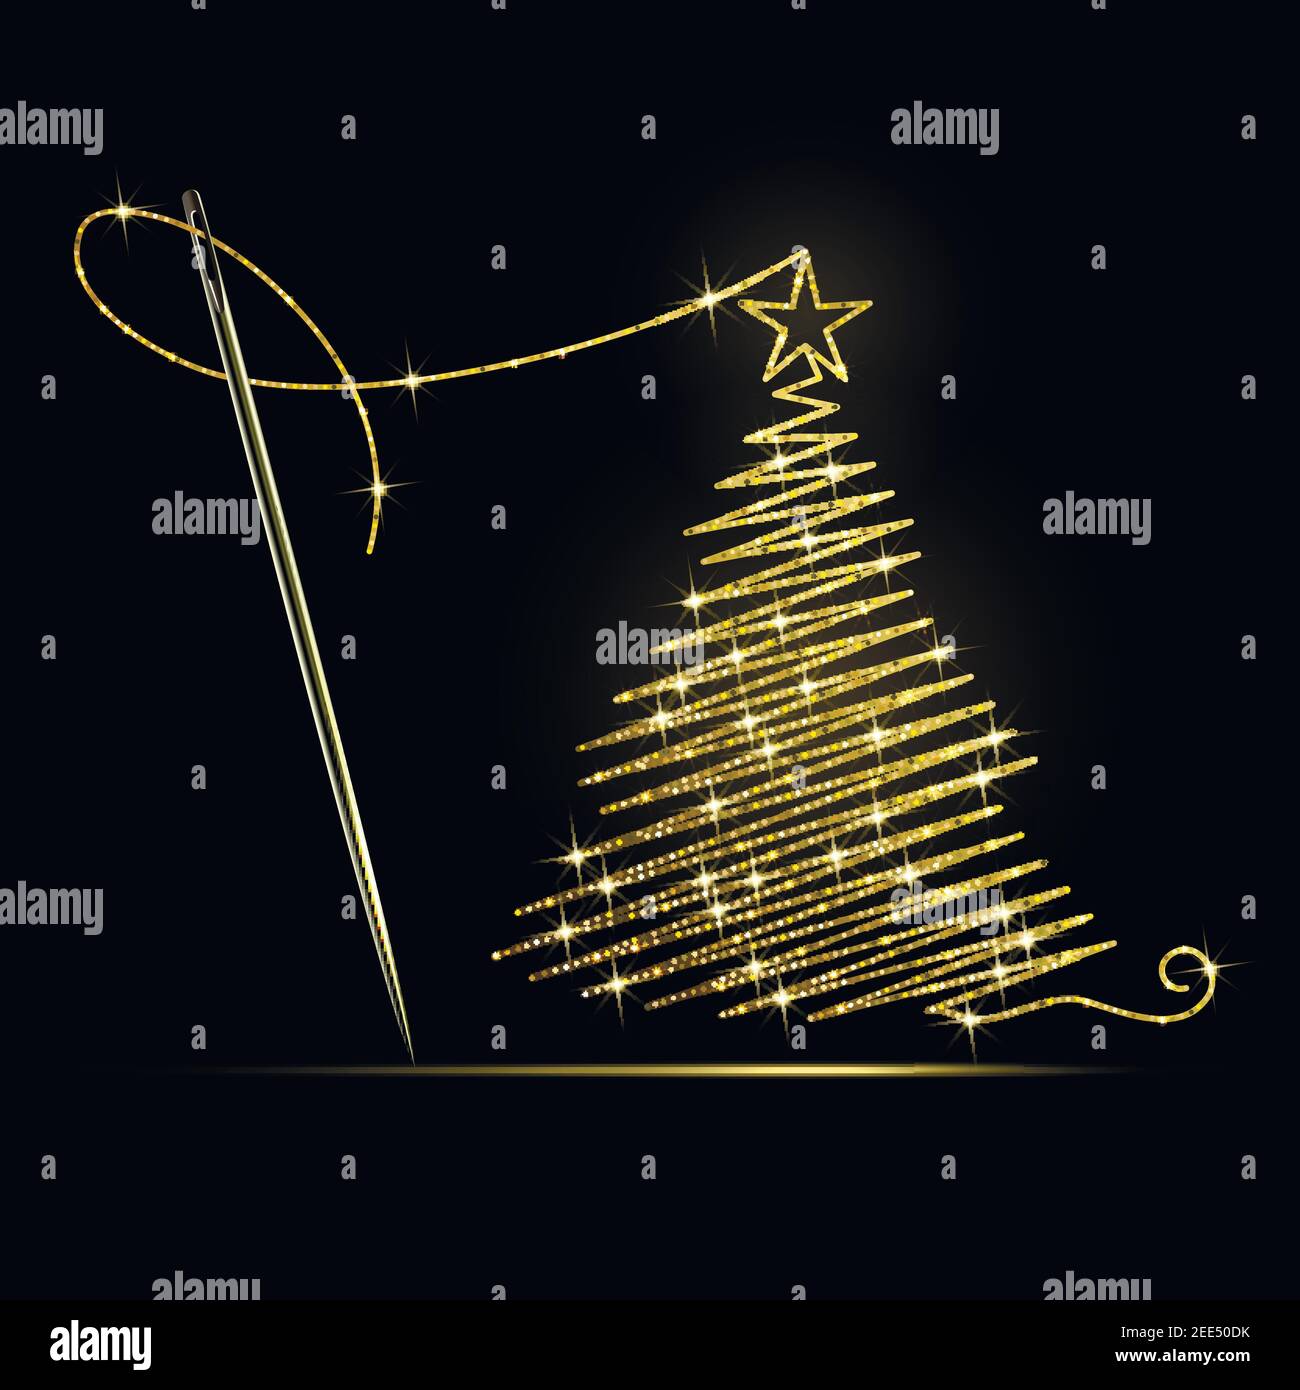 ago da cucire con ricamo in filo d'oro a forma di Un albero di Natale su sfondo nero Illustrazione Vettoriale